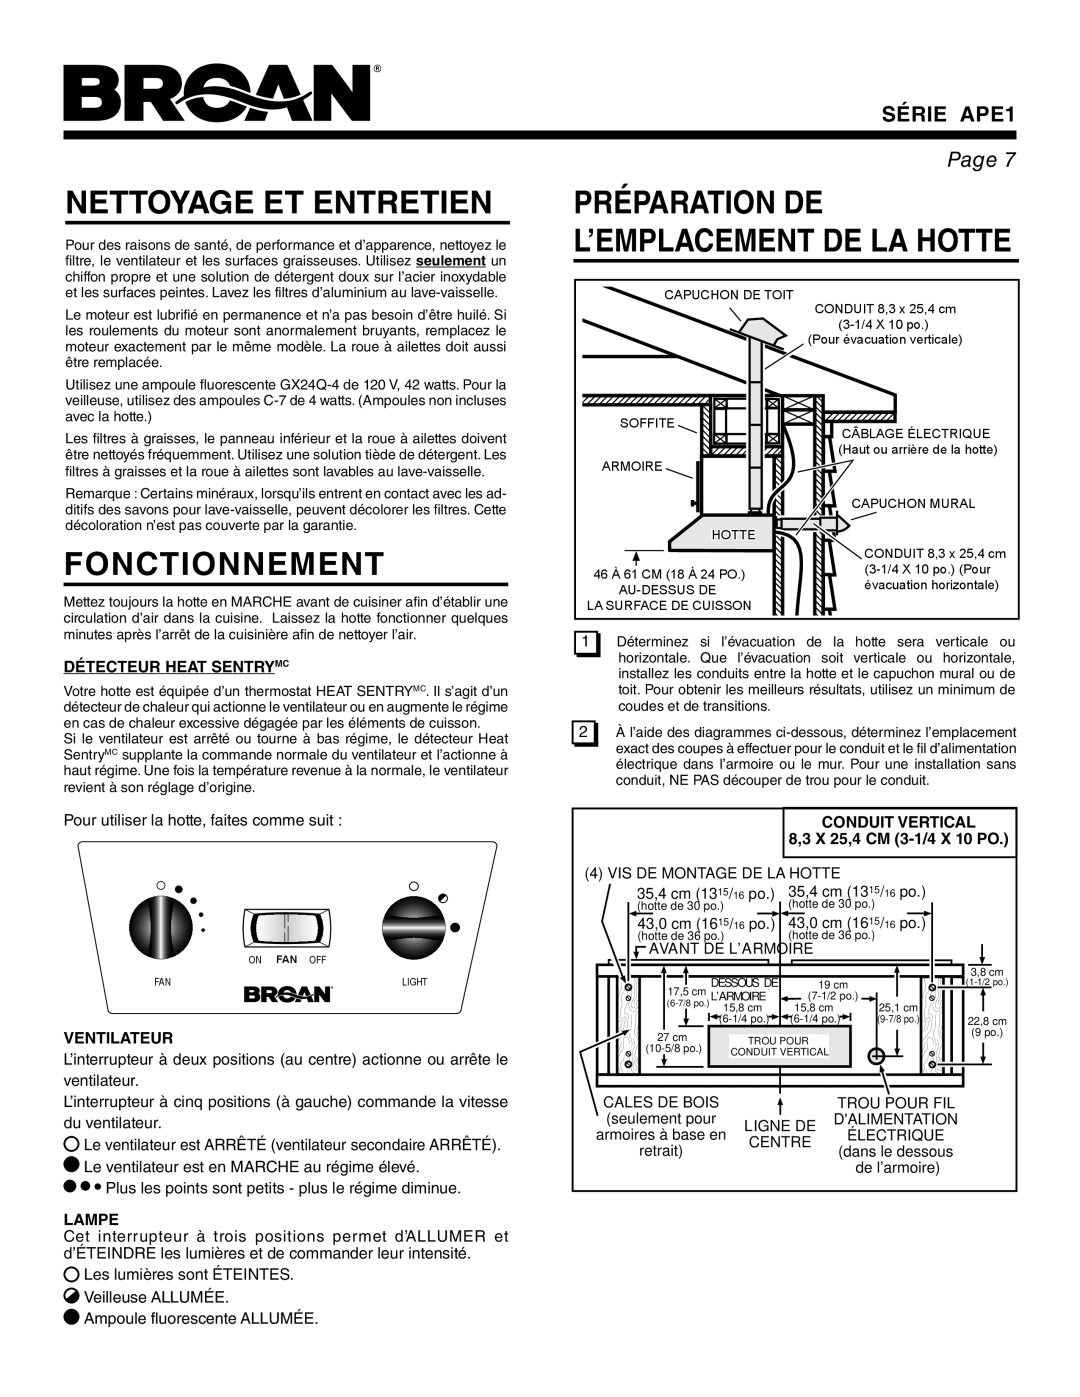 Broan APE1 Nettoyage Et Entretien, Fonctionnement, Préparation De L’Emplacement De La Hotte, Détecteur Heat Sentrymc, Page 